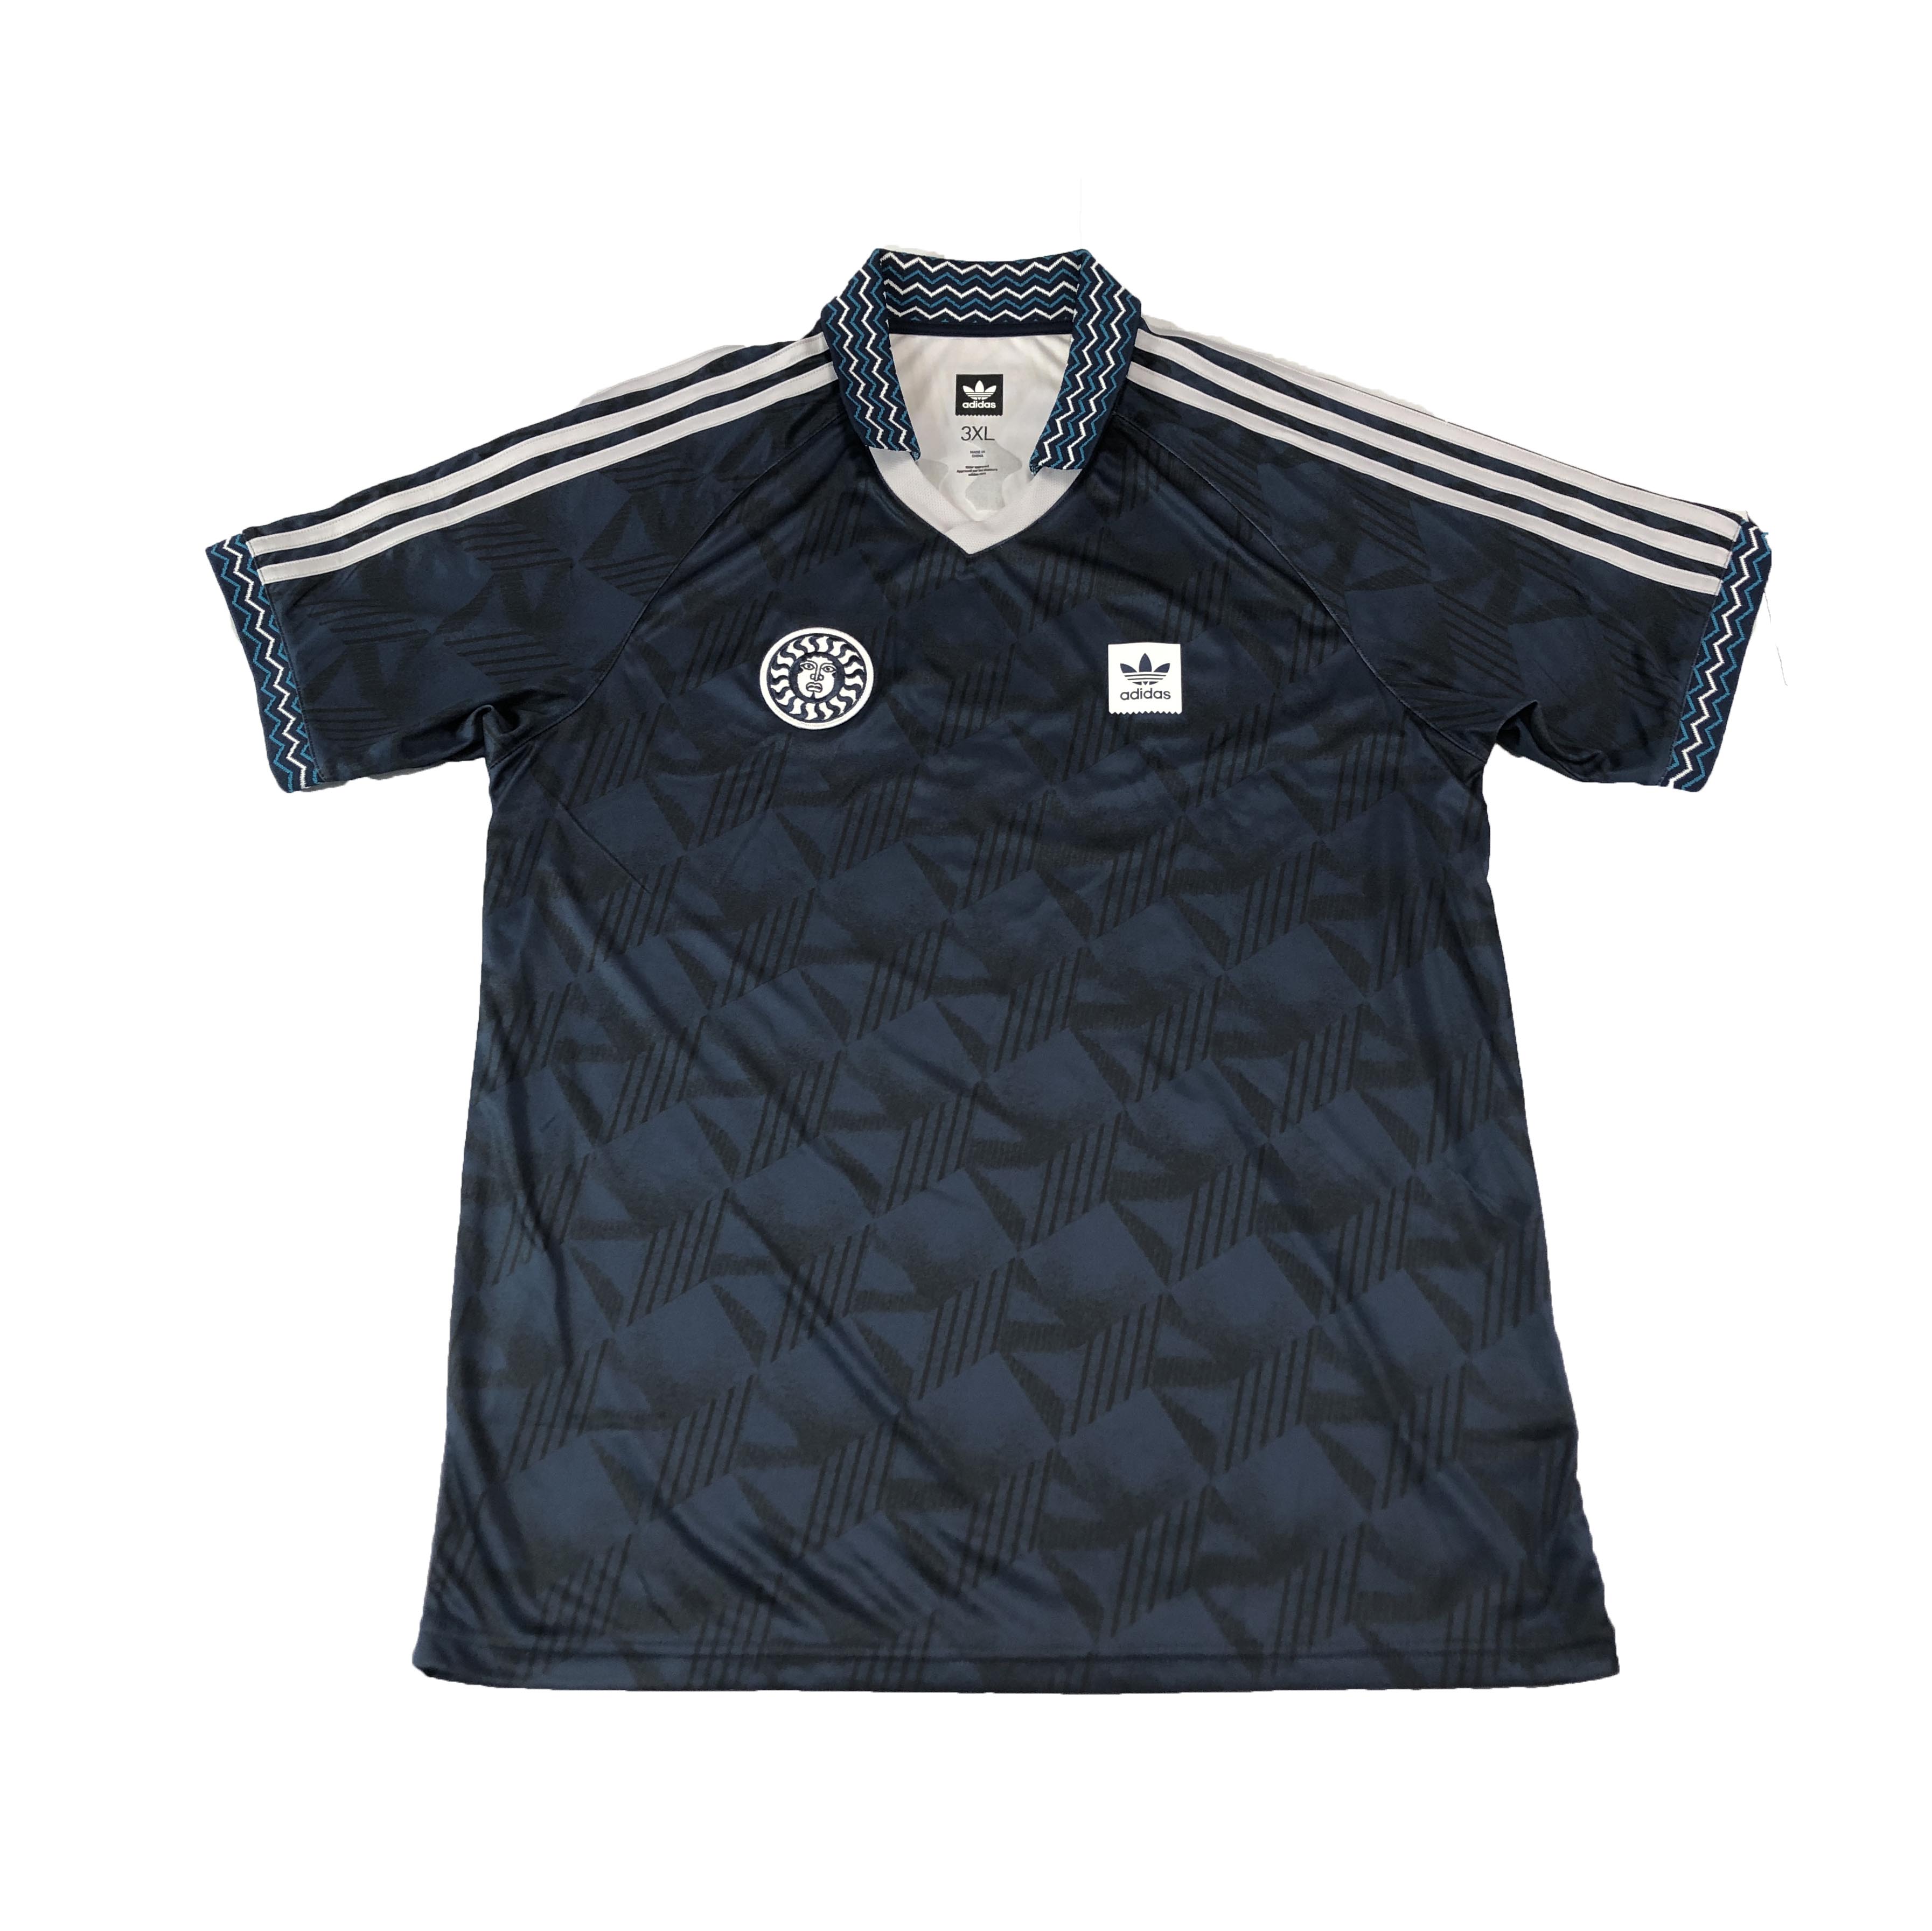 [Adidas] BTLGUE Jersey II Shirt - Size 3XL